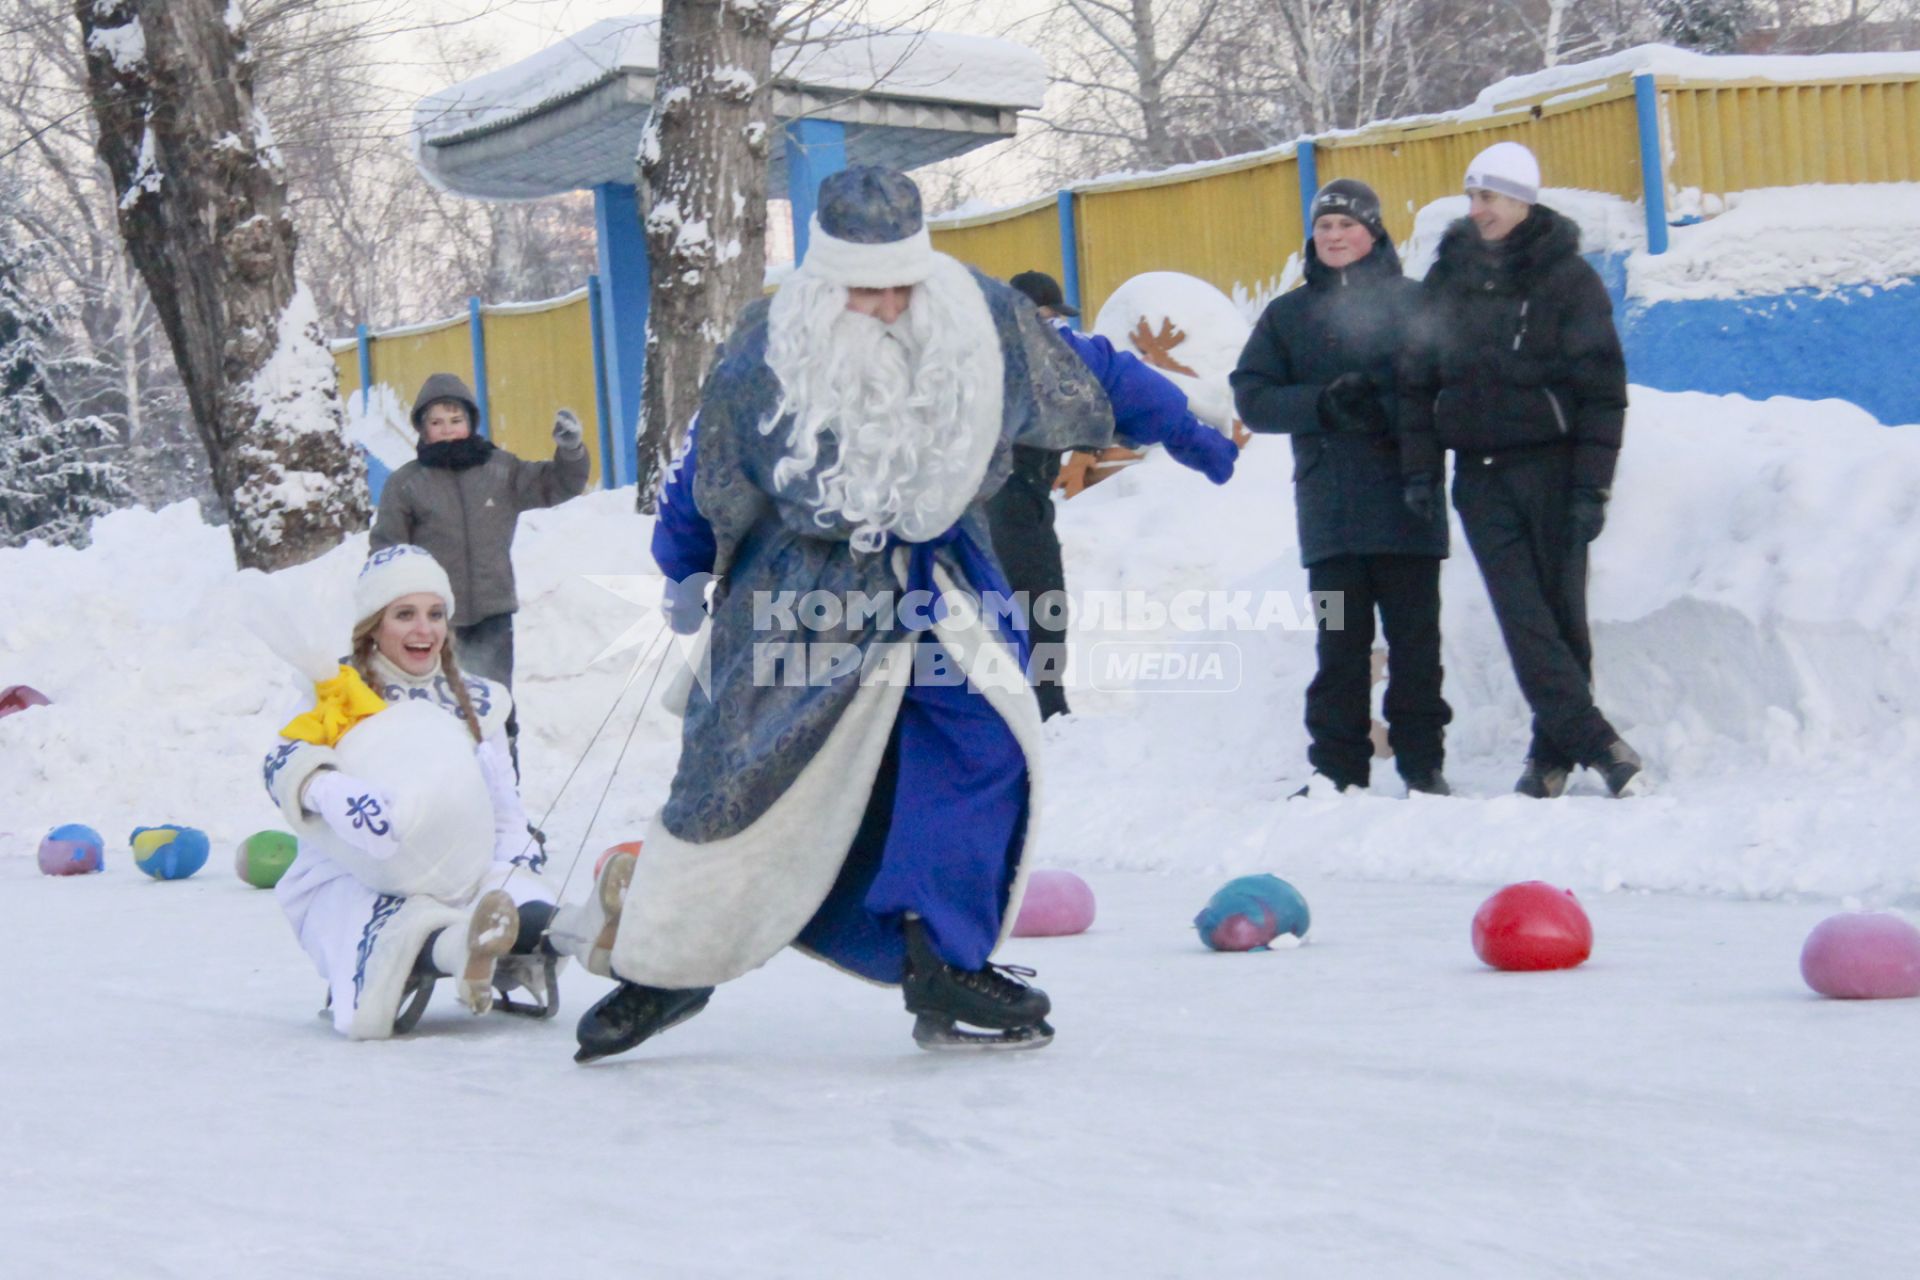 Забег Дедов Морозов на коньках. Дед мороз на коньках тащит за собой Снегурочку на санка, которая держит мешок с подарками.